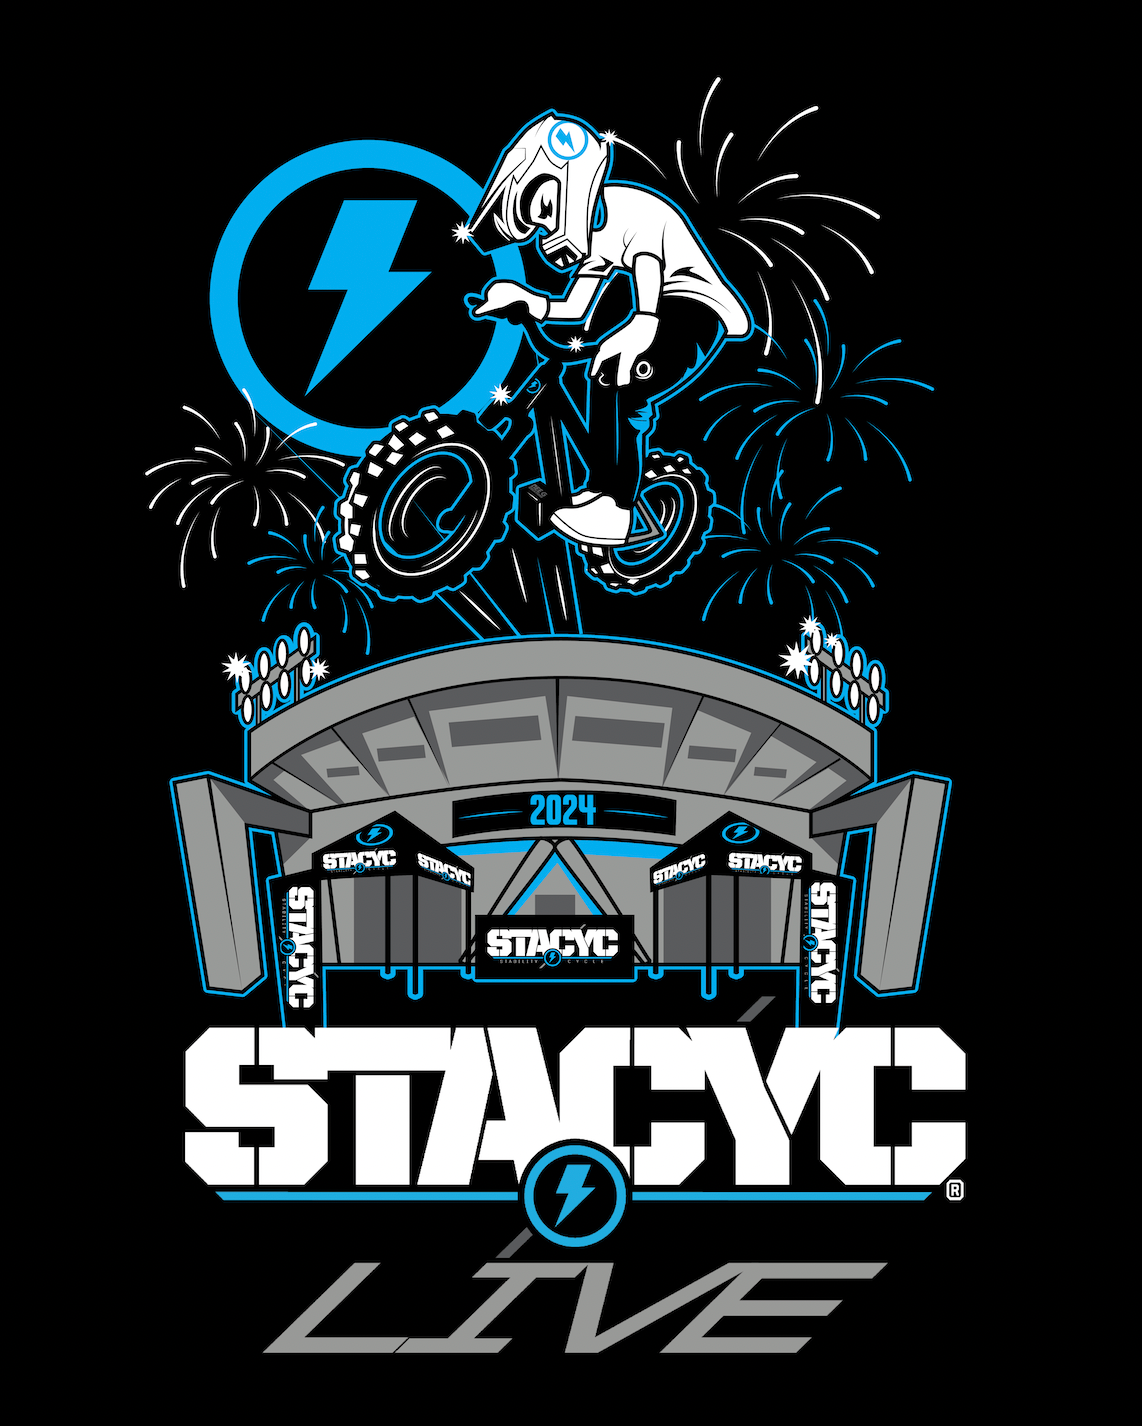 STACYC Live is Back for 2023 Monster Energy Supercross Season